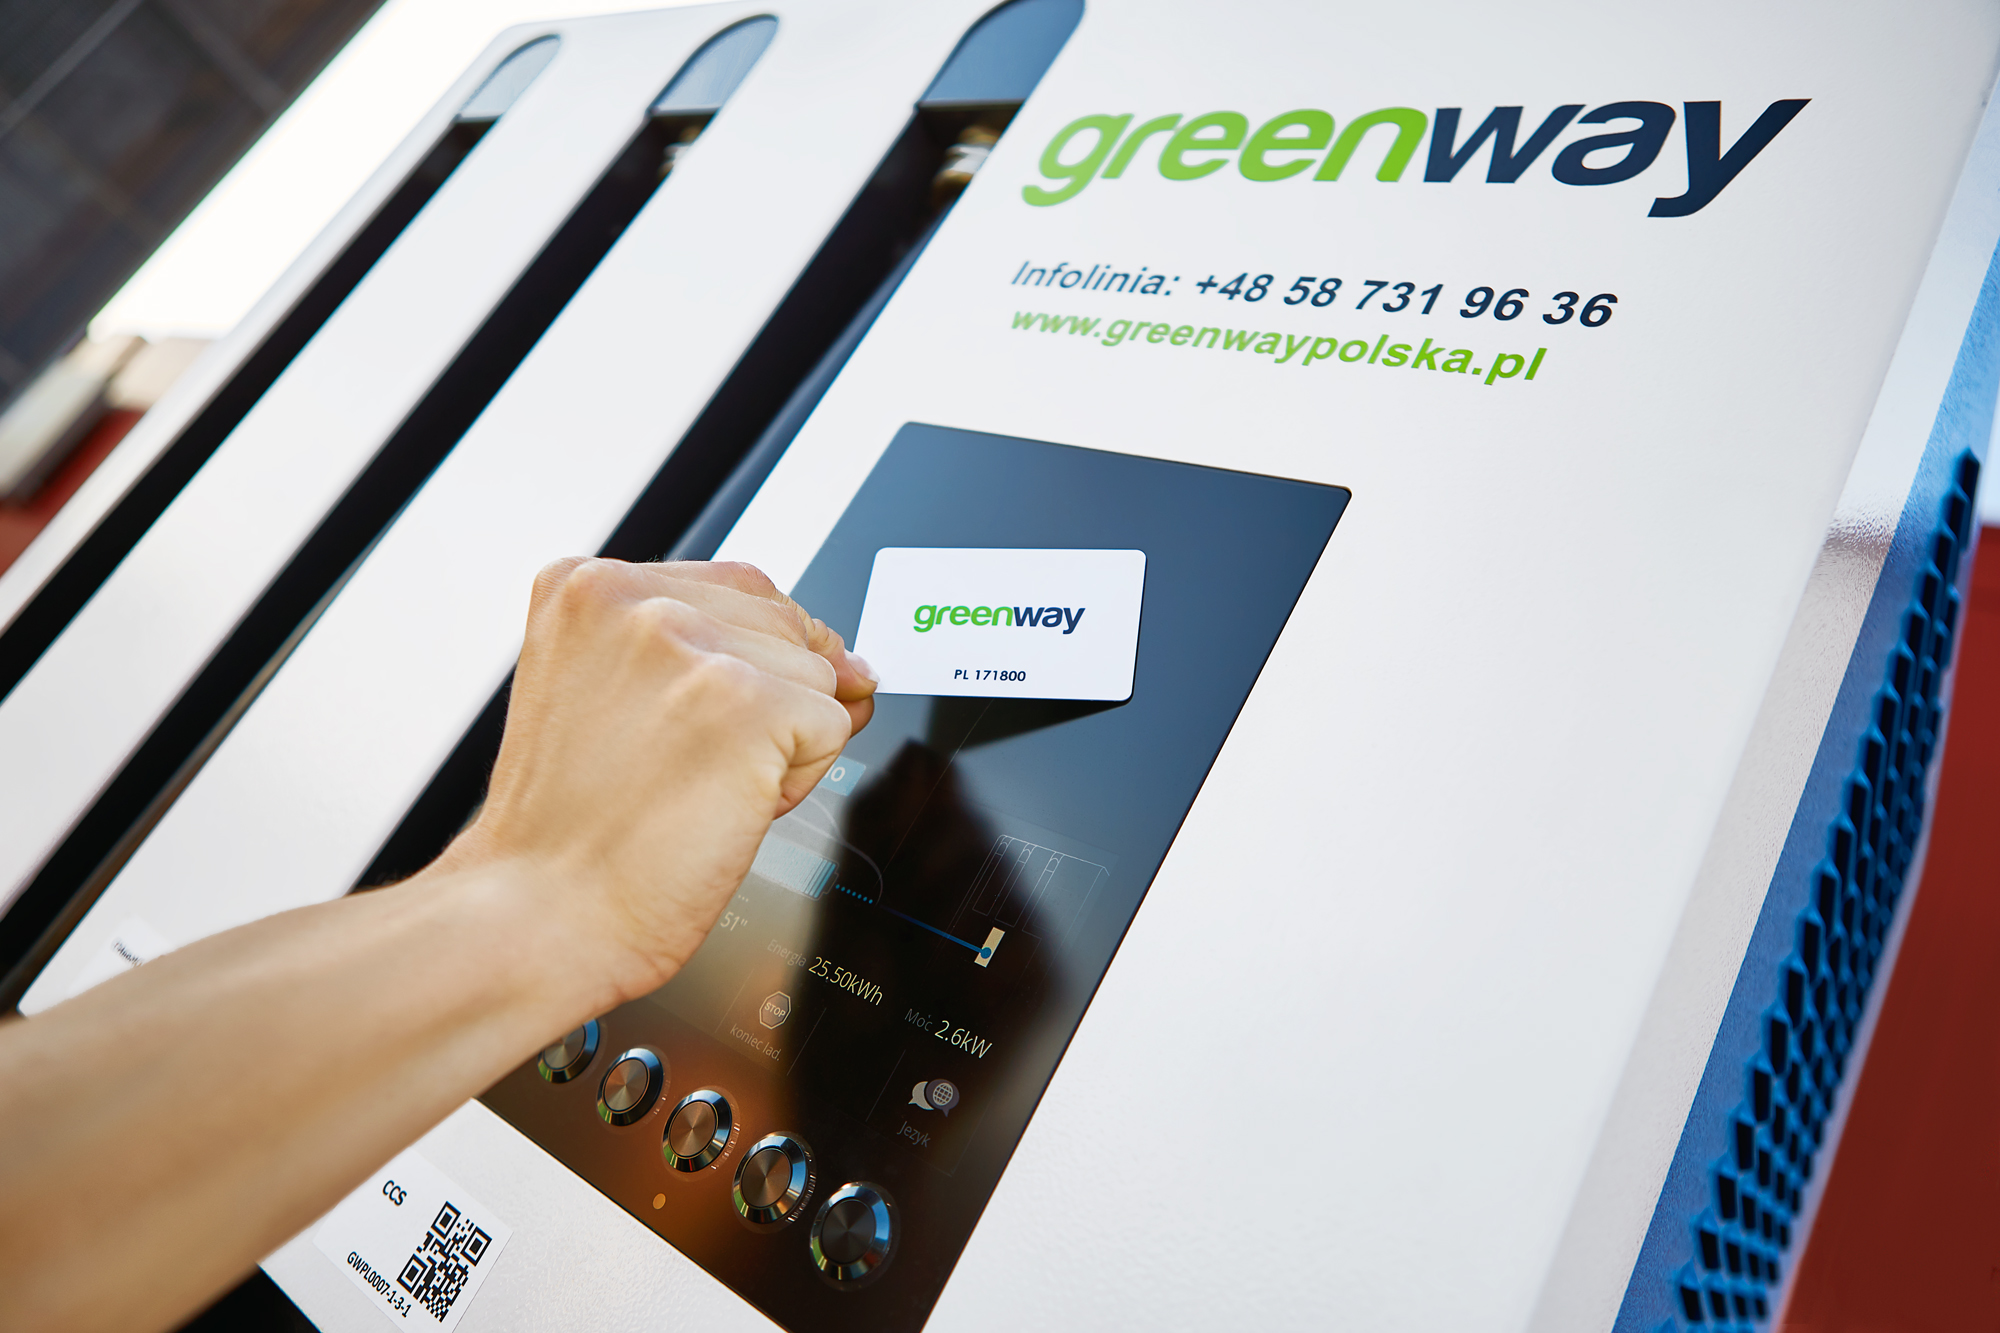 Sieć GreenWay właśnie wzbogaciła się o 70 nowych stacji ładowania